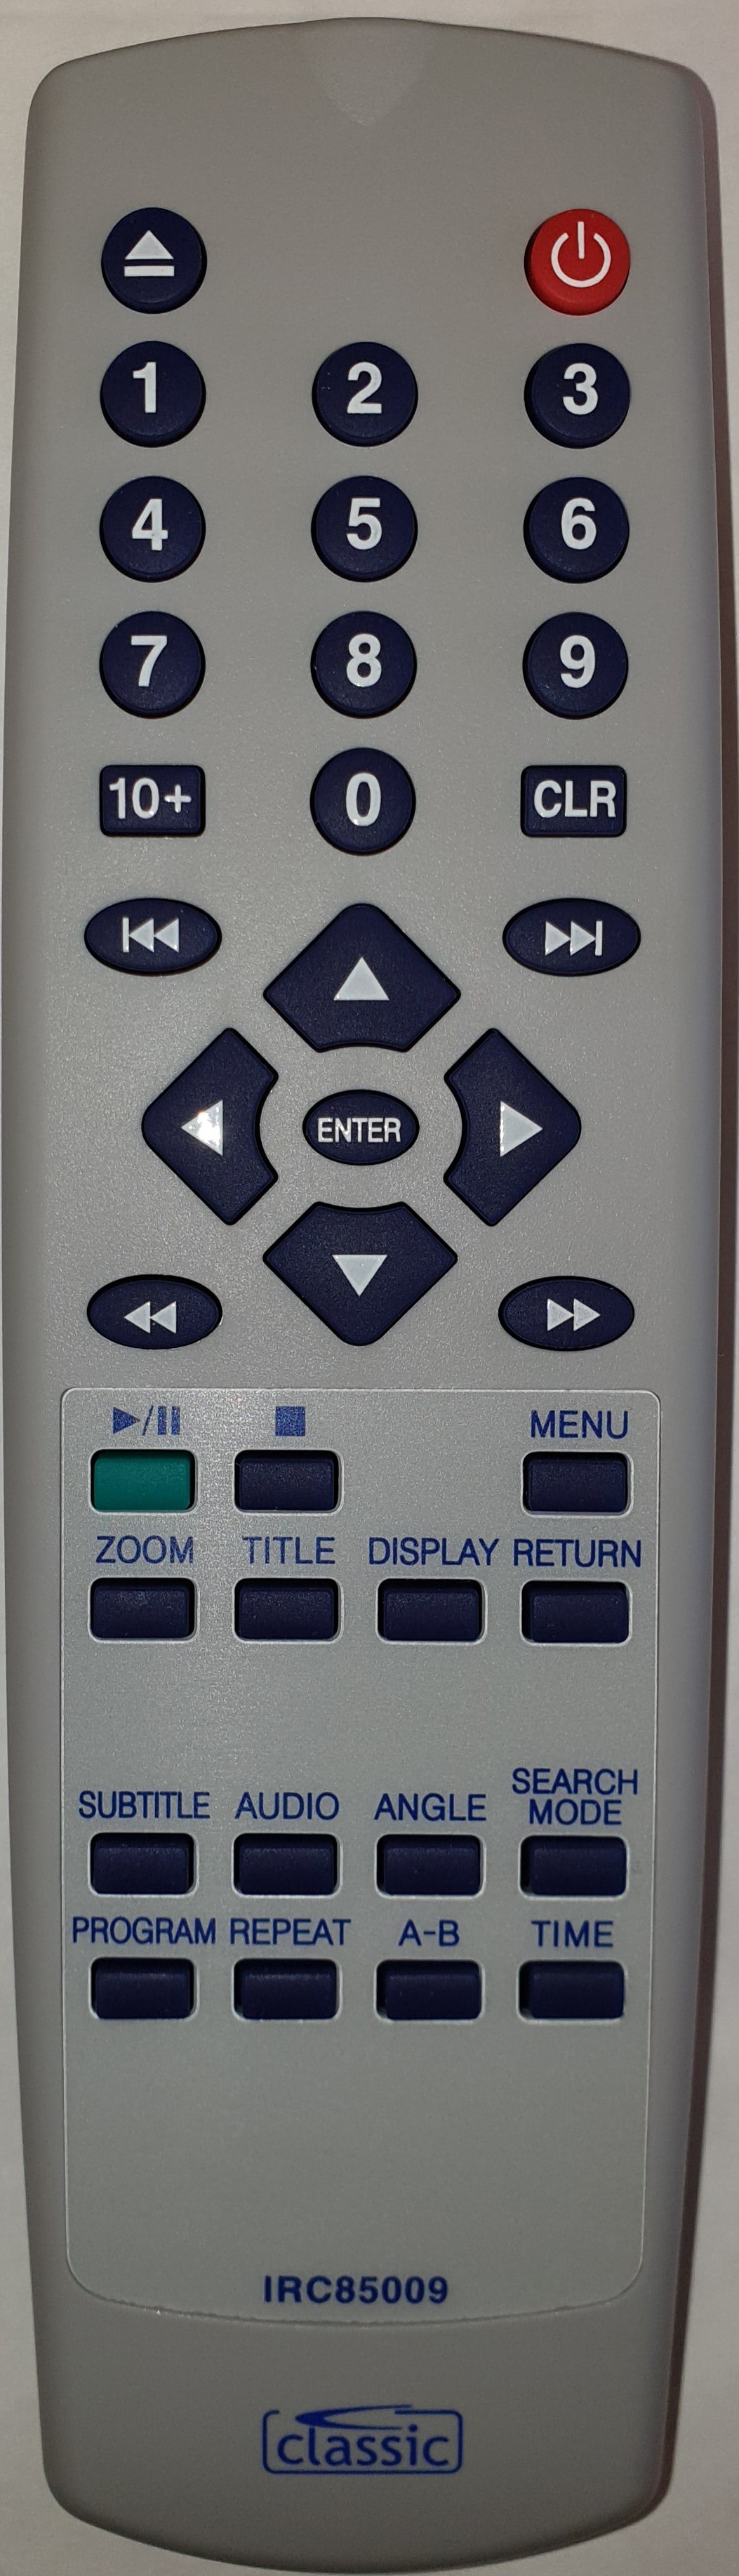 ALBA DVDRC38 Remote Control